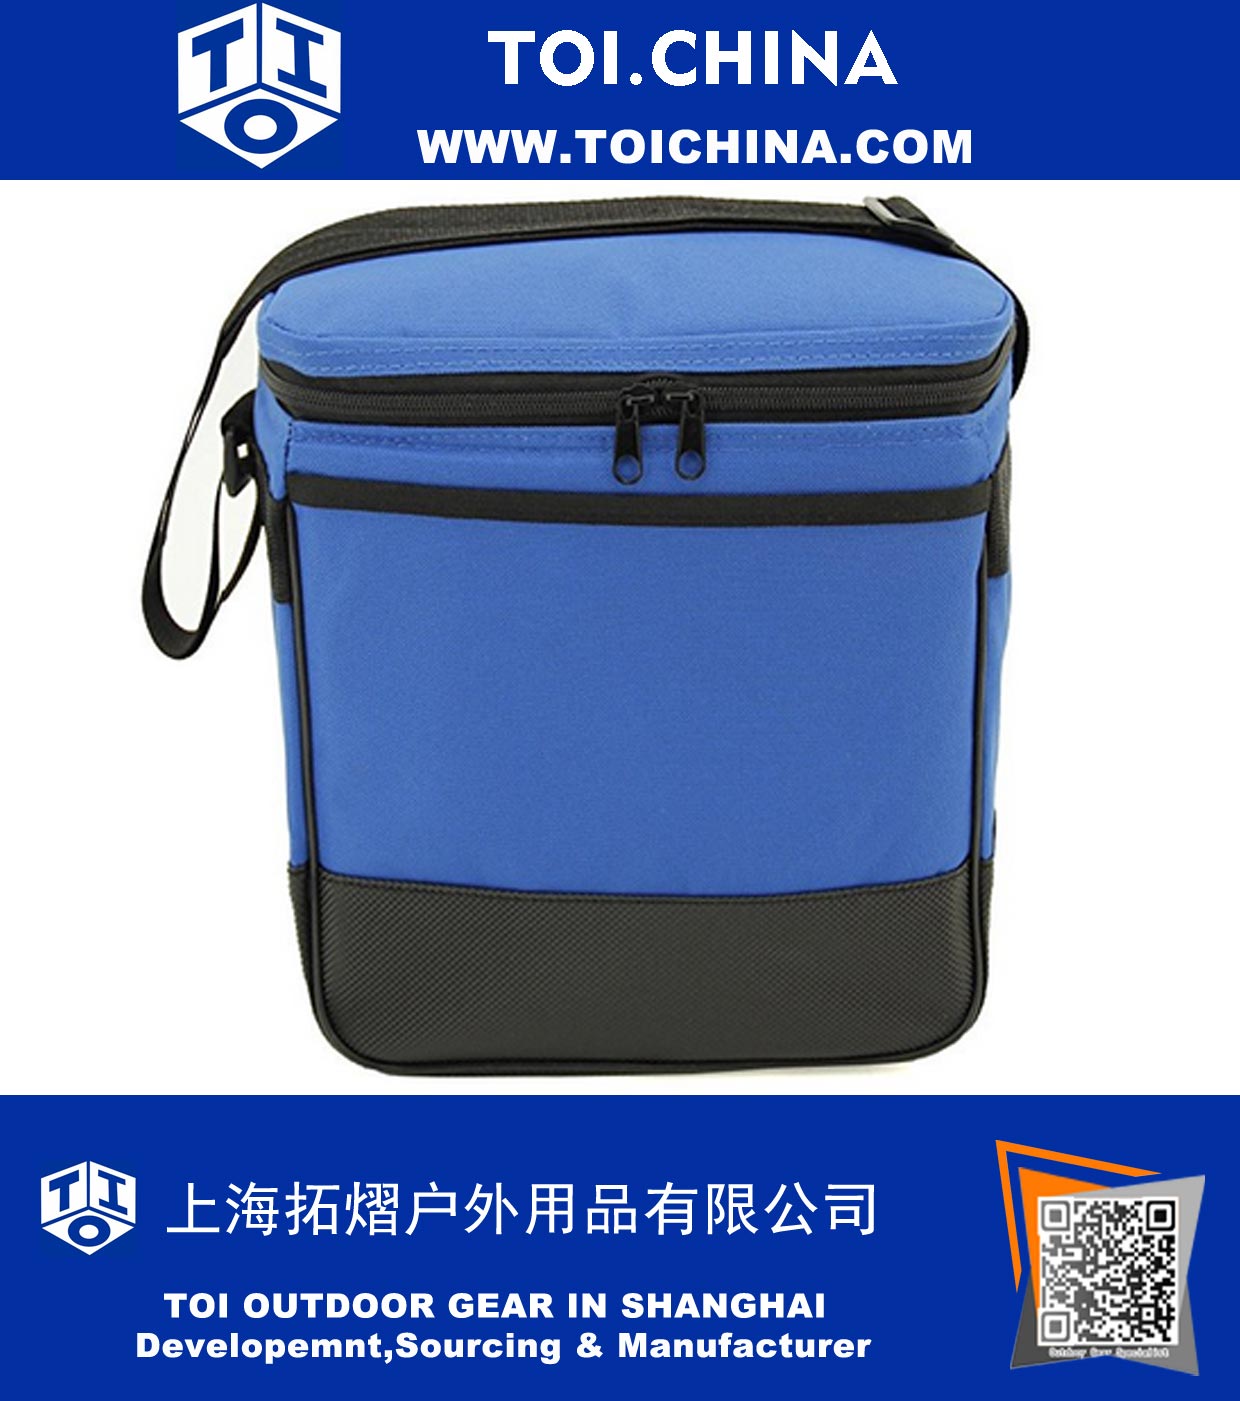 Cooler Bag / Lunch Cooler / 12 canettes refroidisseur de boissons